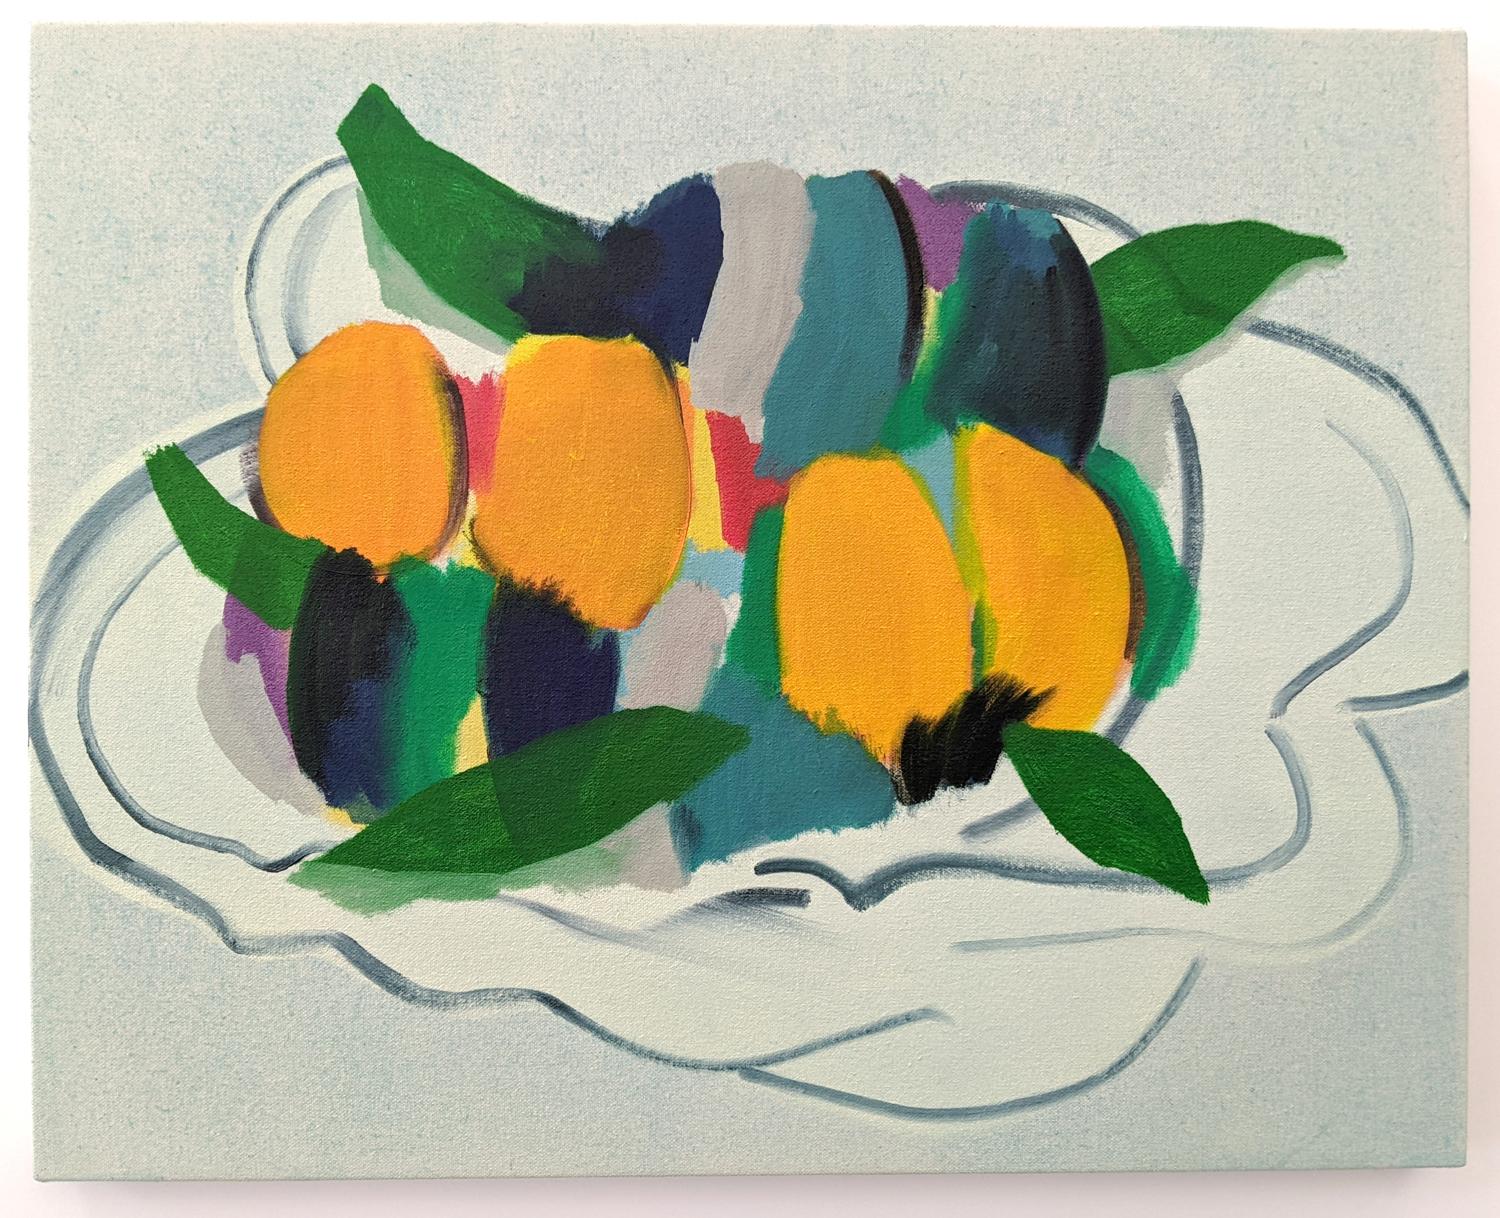 Bol à fruits avec feuilles - nature morte luxuriante et abstraite, huile sur toile sur panneau - Painting de Mel Davis